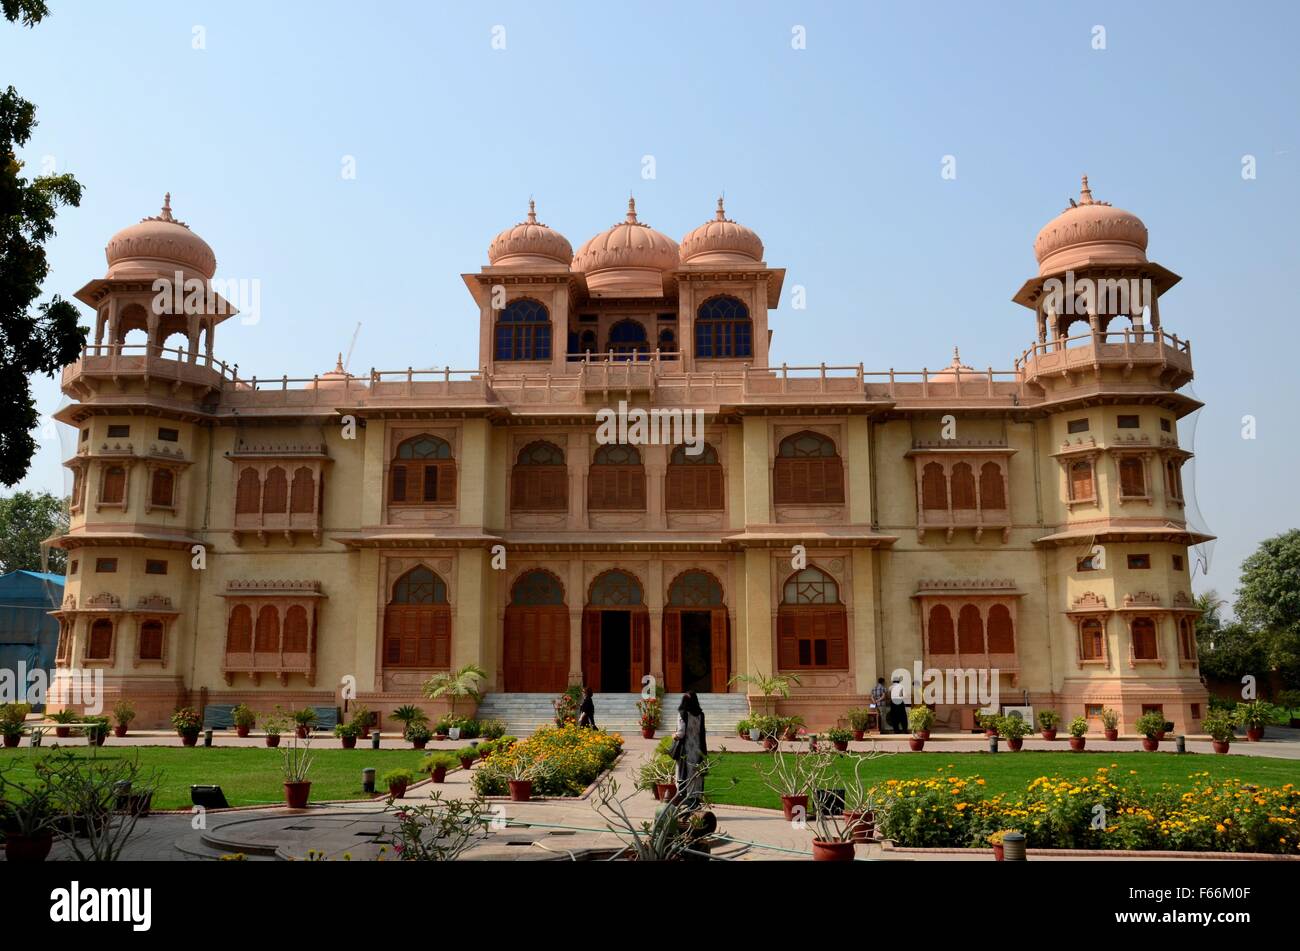 Les visiteurs se promener dans les jardins de Mohatta Palace Museum Karachi Pakistan Sindh Banque D'Images